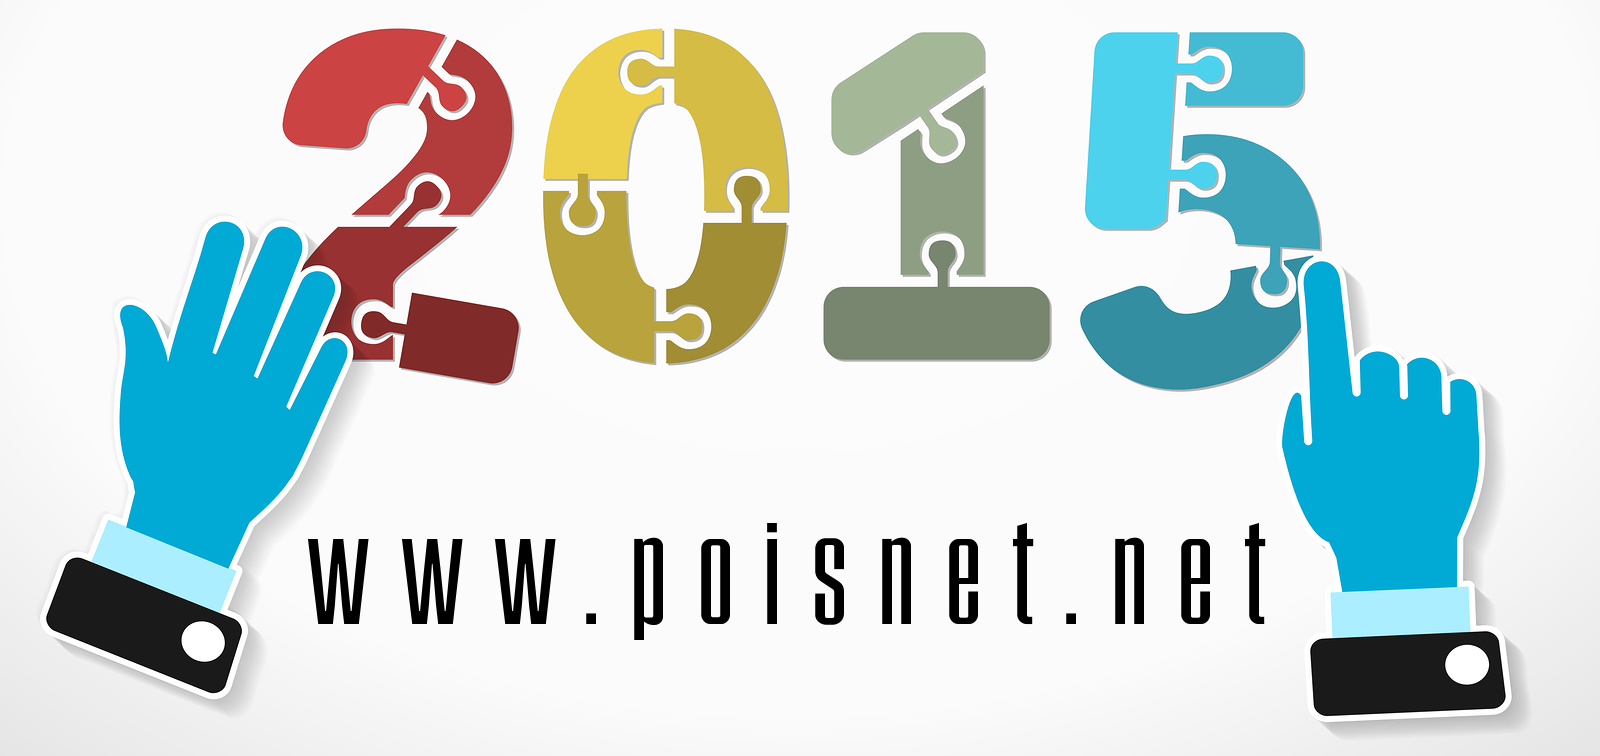 PoisNet yenilenen arayüzü ve altyapısı ile yeni yıl 2015'e hazır!